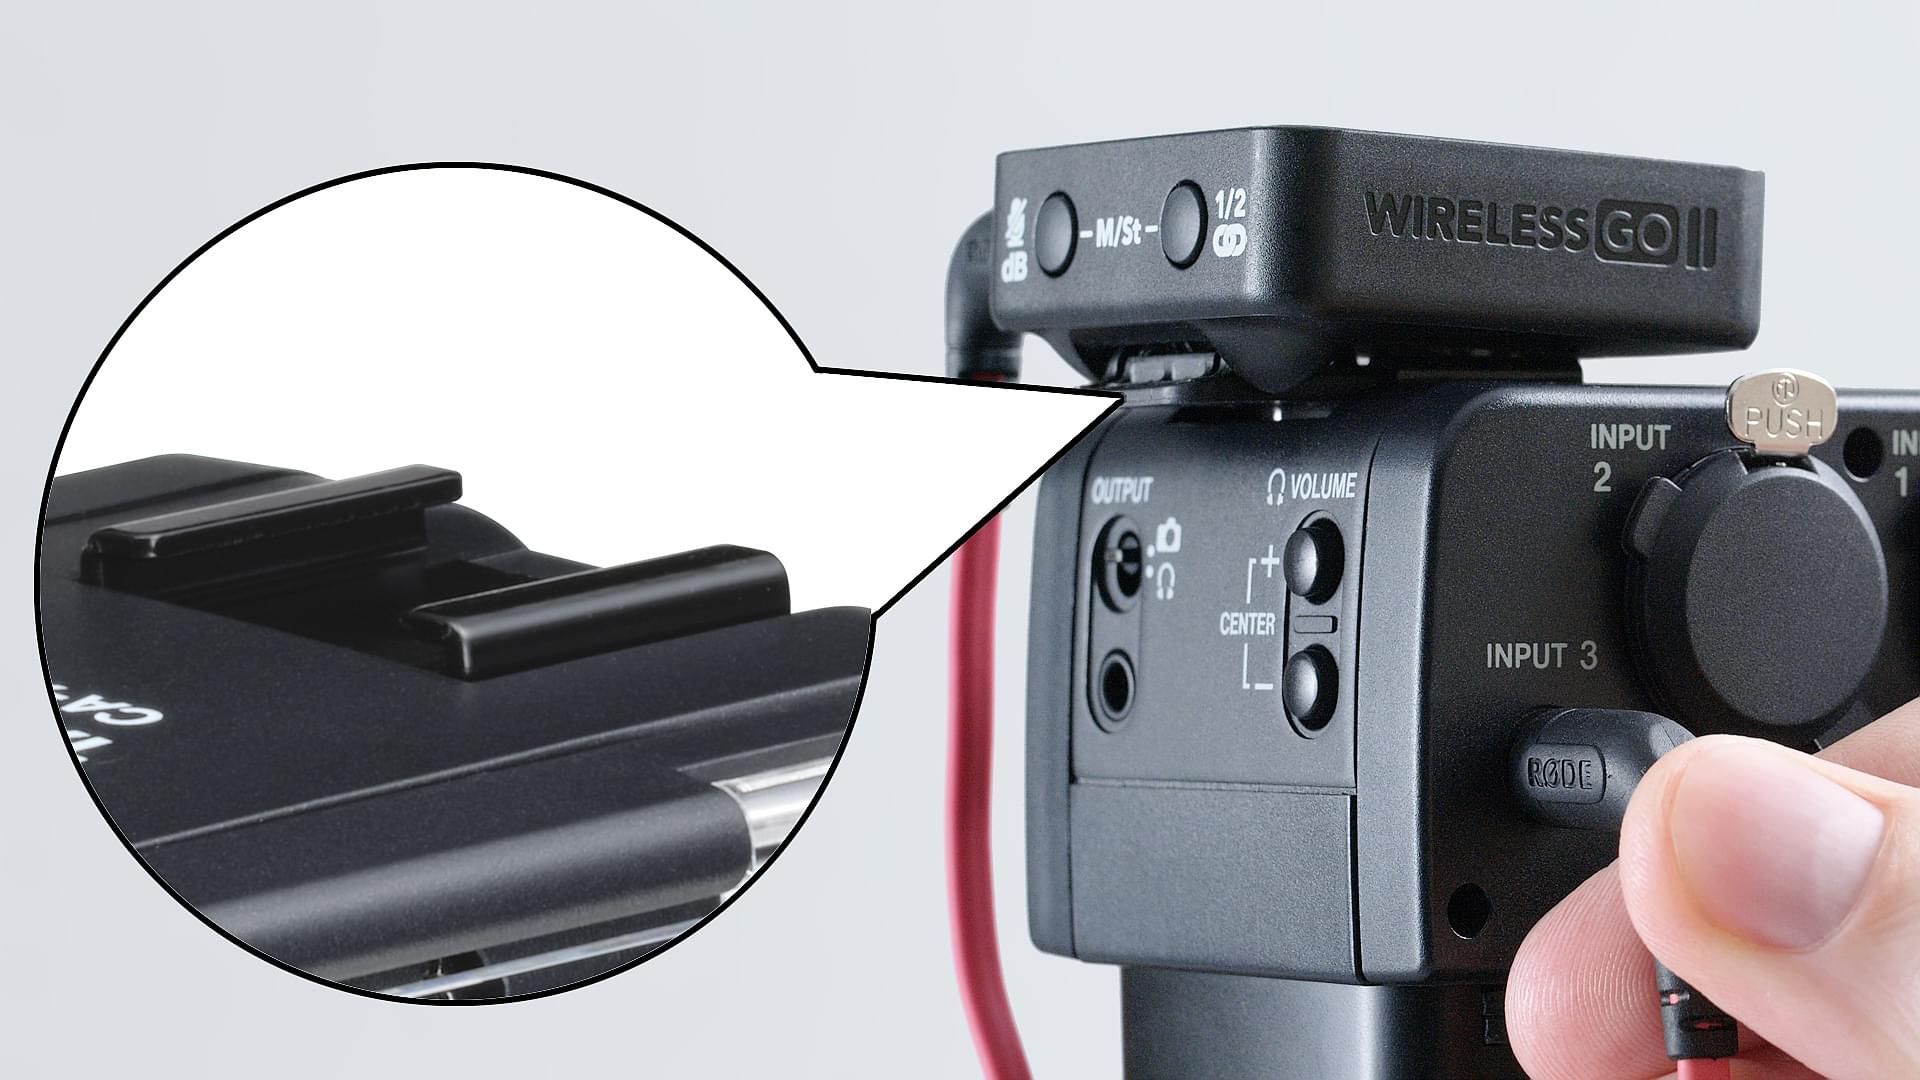 Tascam TM-200SG  Micro canon statique pour tournage vidéo